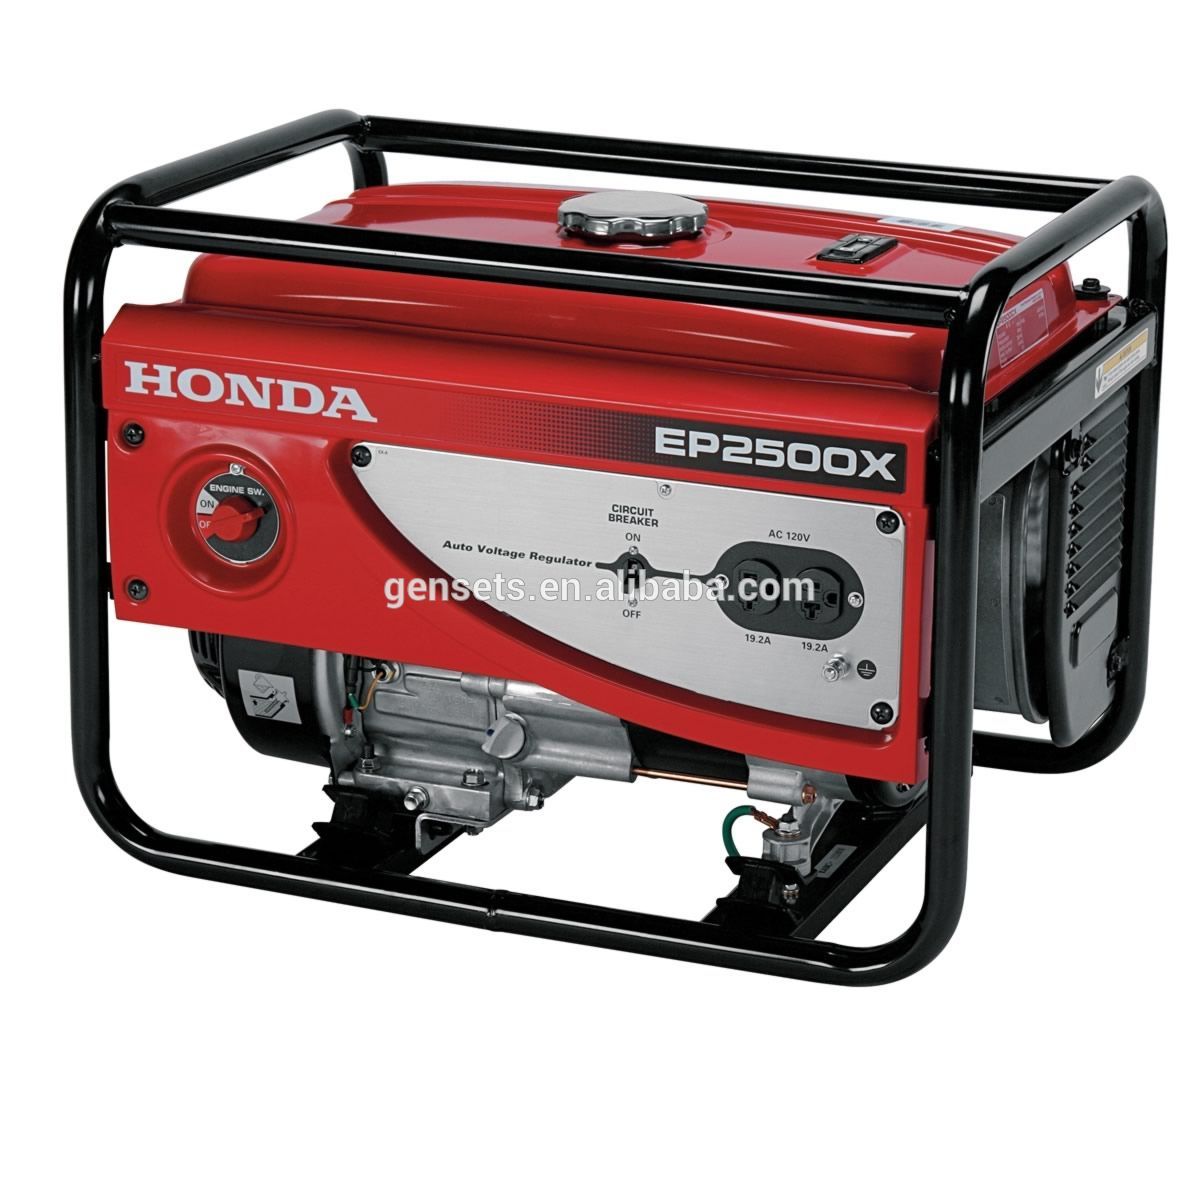 Honda 4500 generator pricing #1